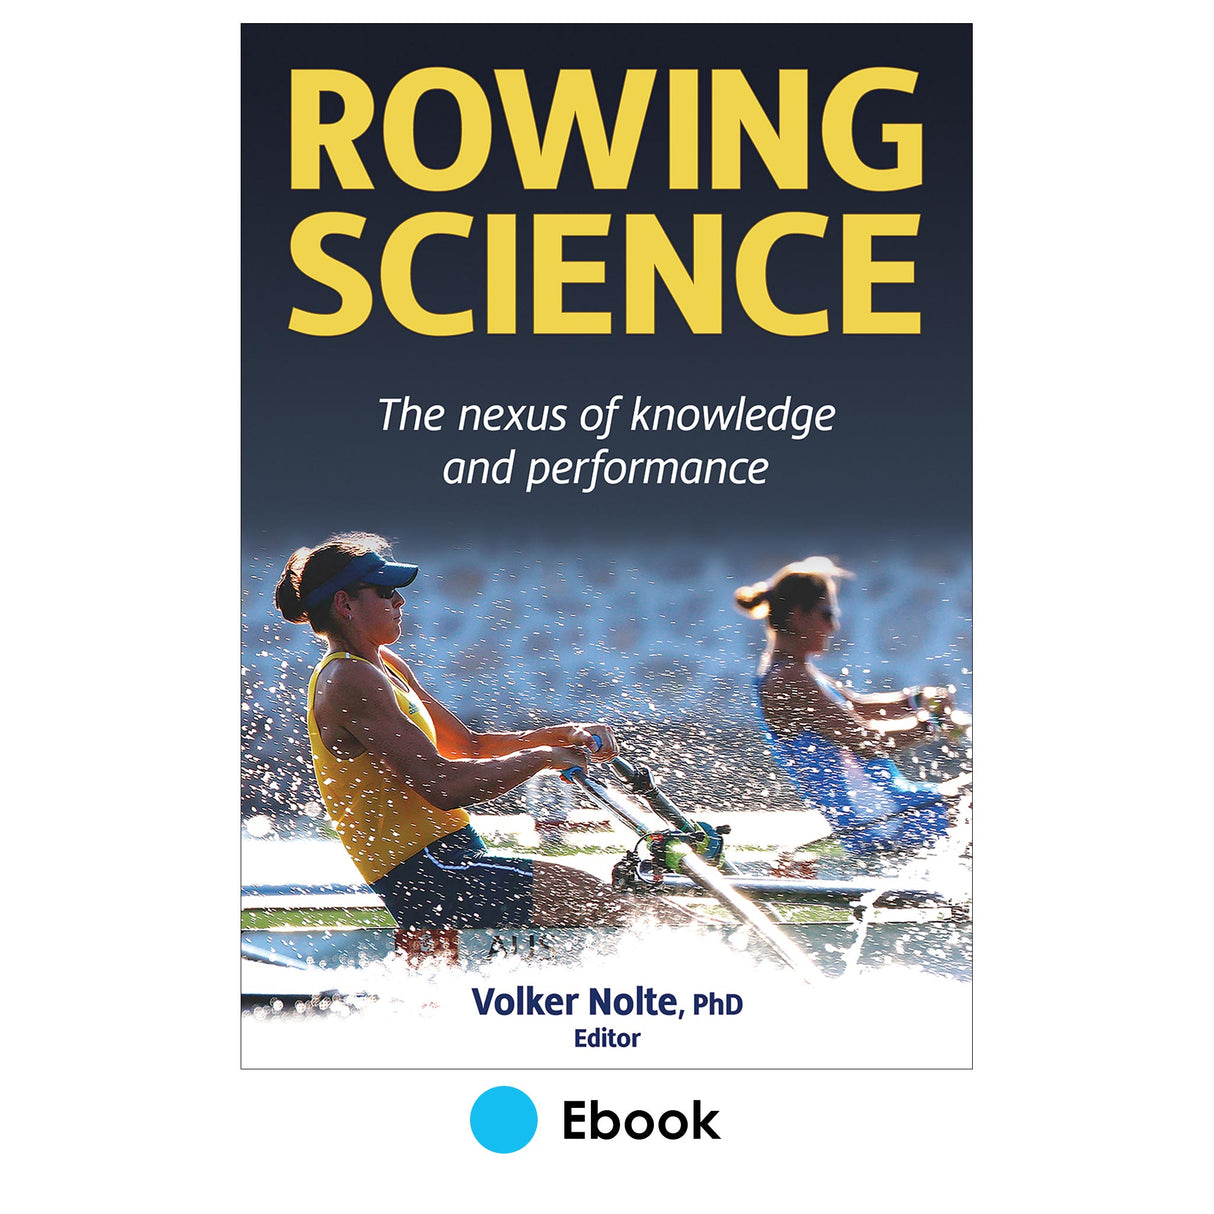 Rowing Science epub